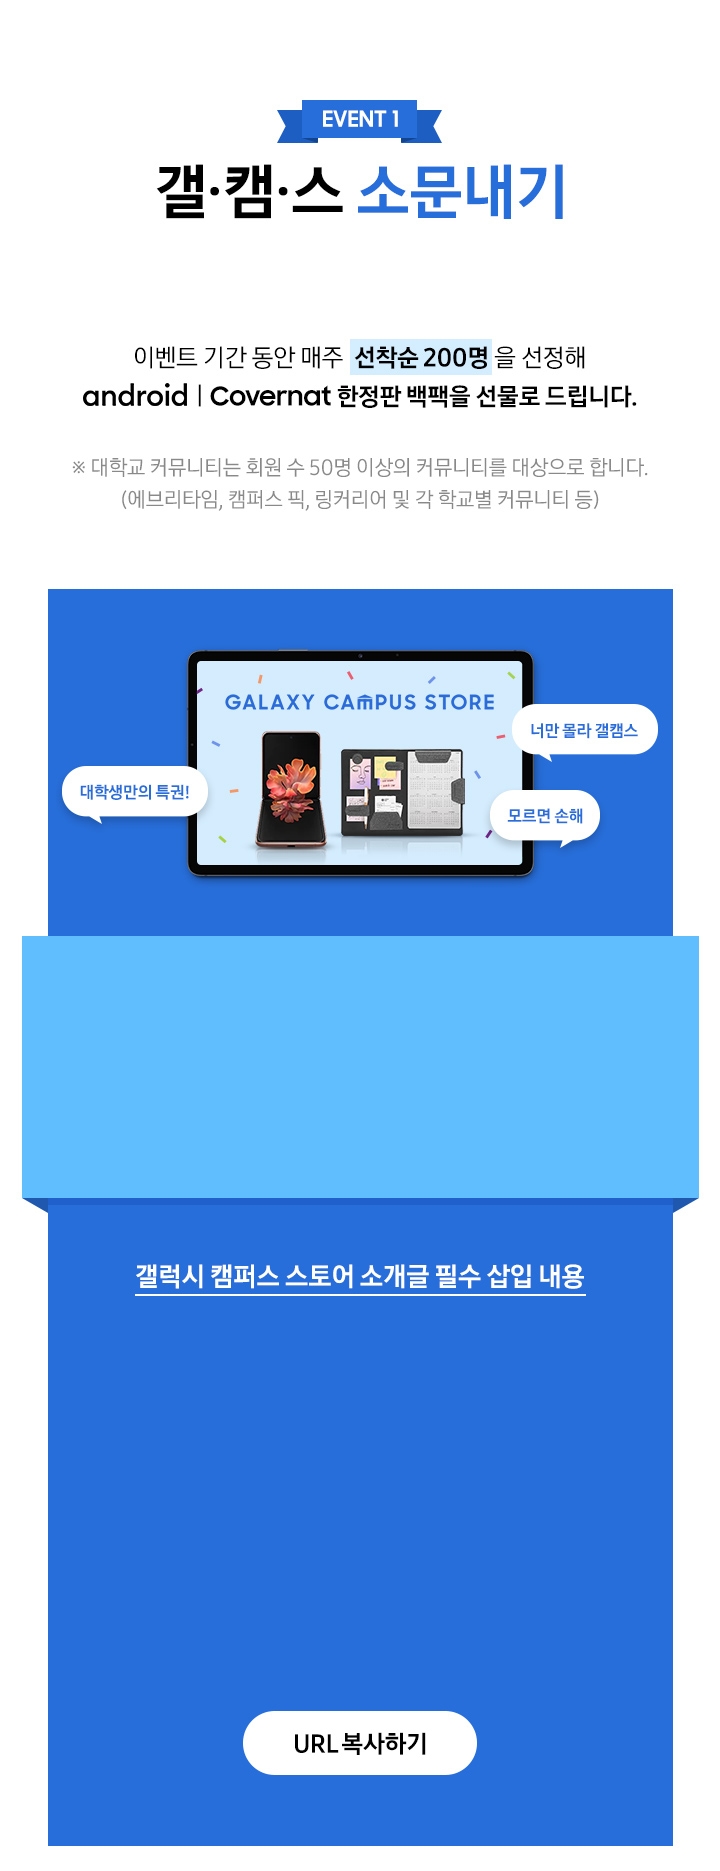 갤캠스 소문내기 이벤트 설명 / 갤캠스 소문내기 이벤트 6주차 미션